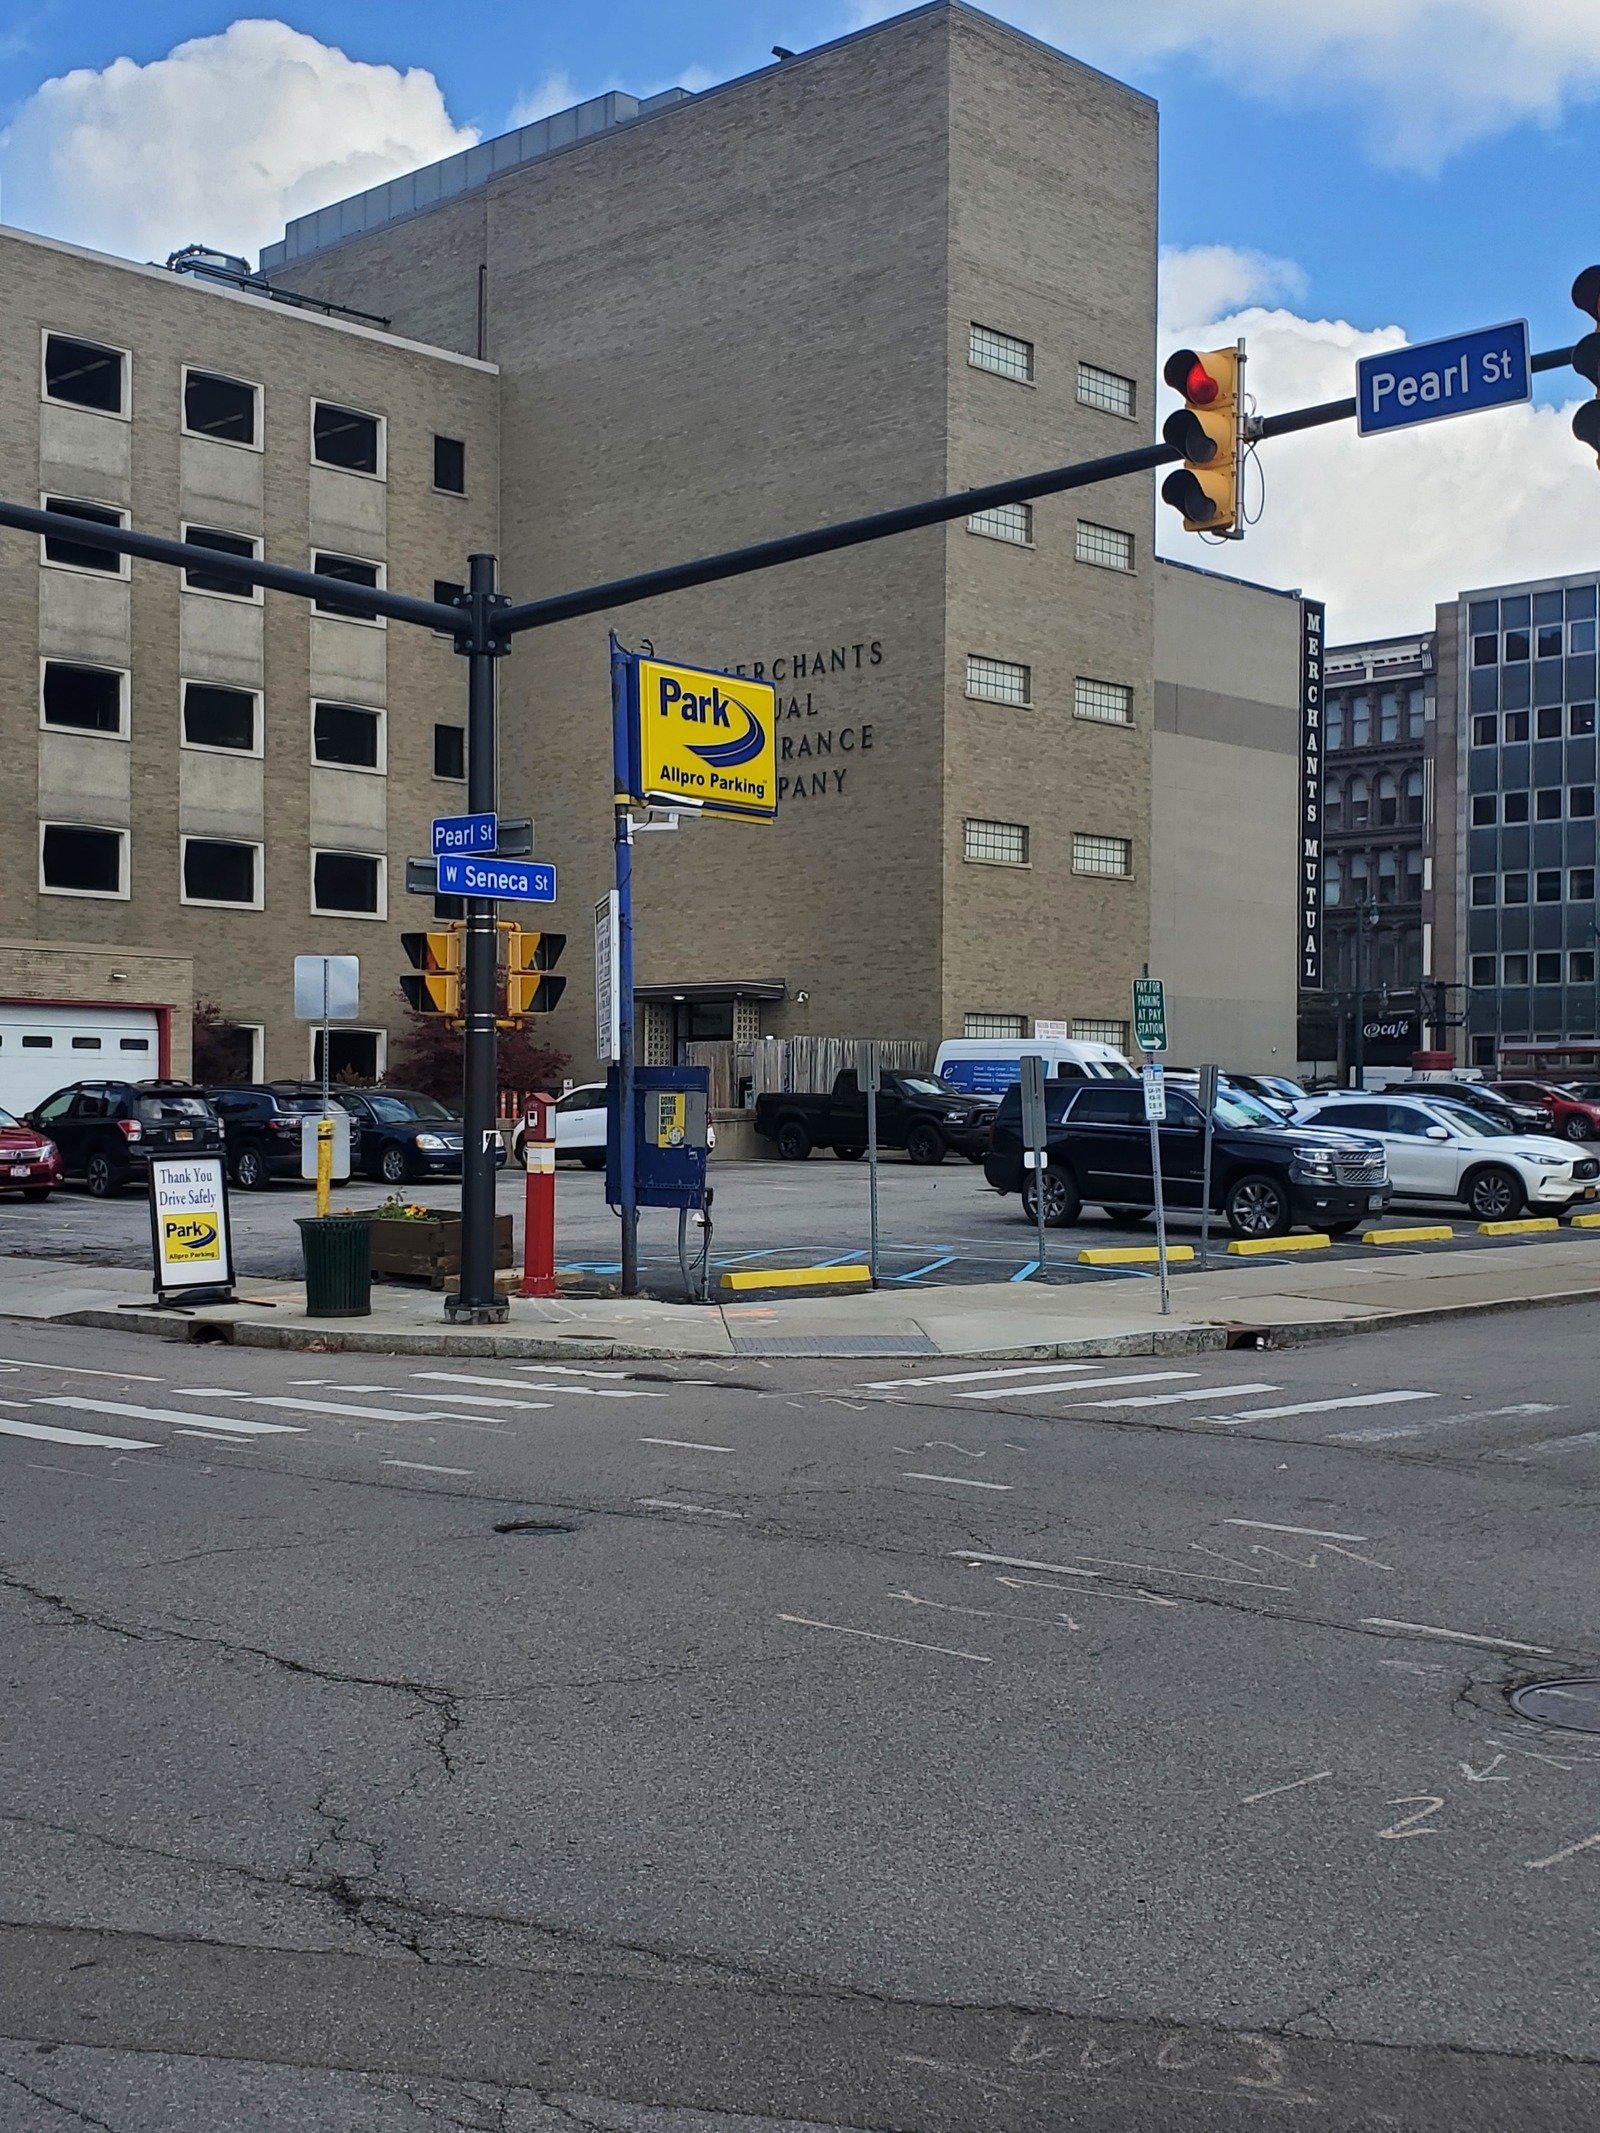  parking on Pearl Street in Buffalo